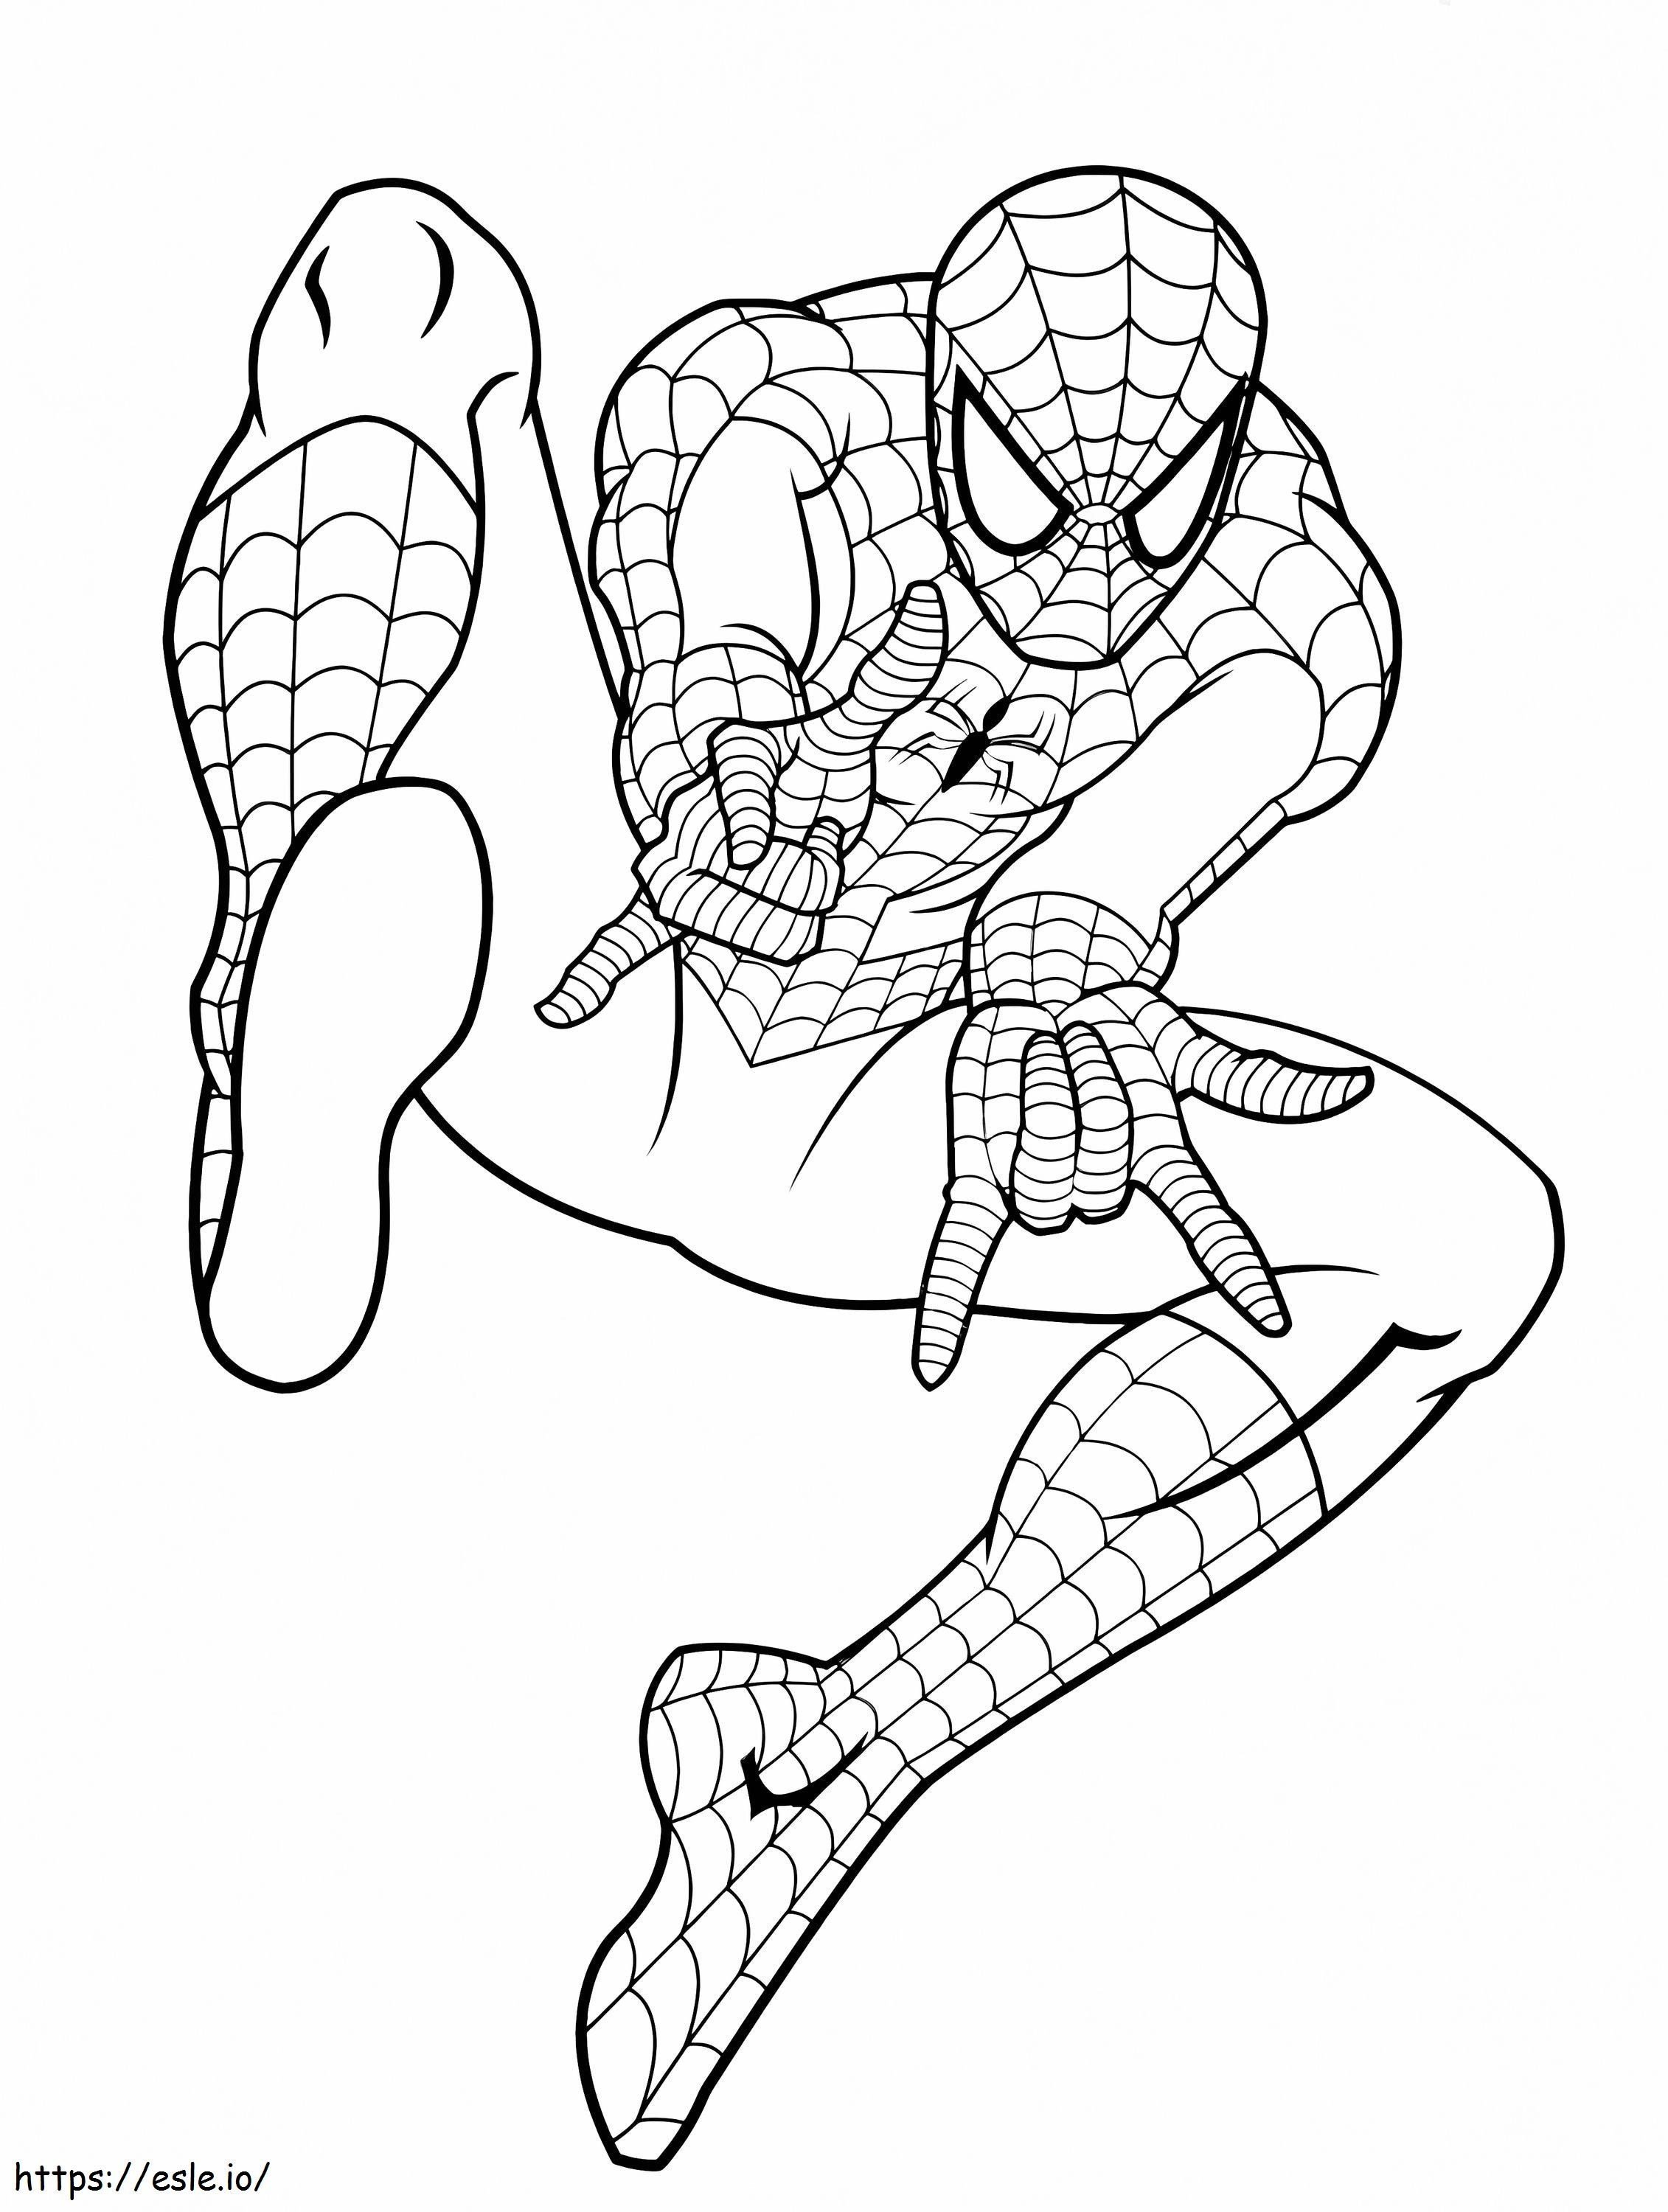 Coloriage Spider-Man 7 772X1024 à imprimer dessin